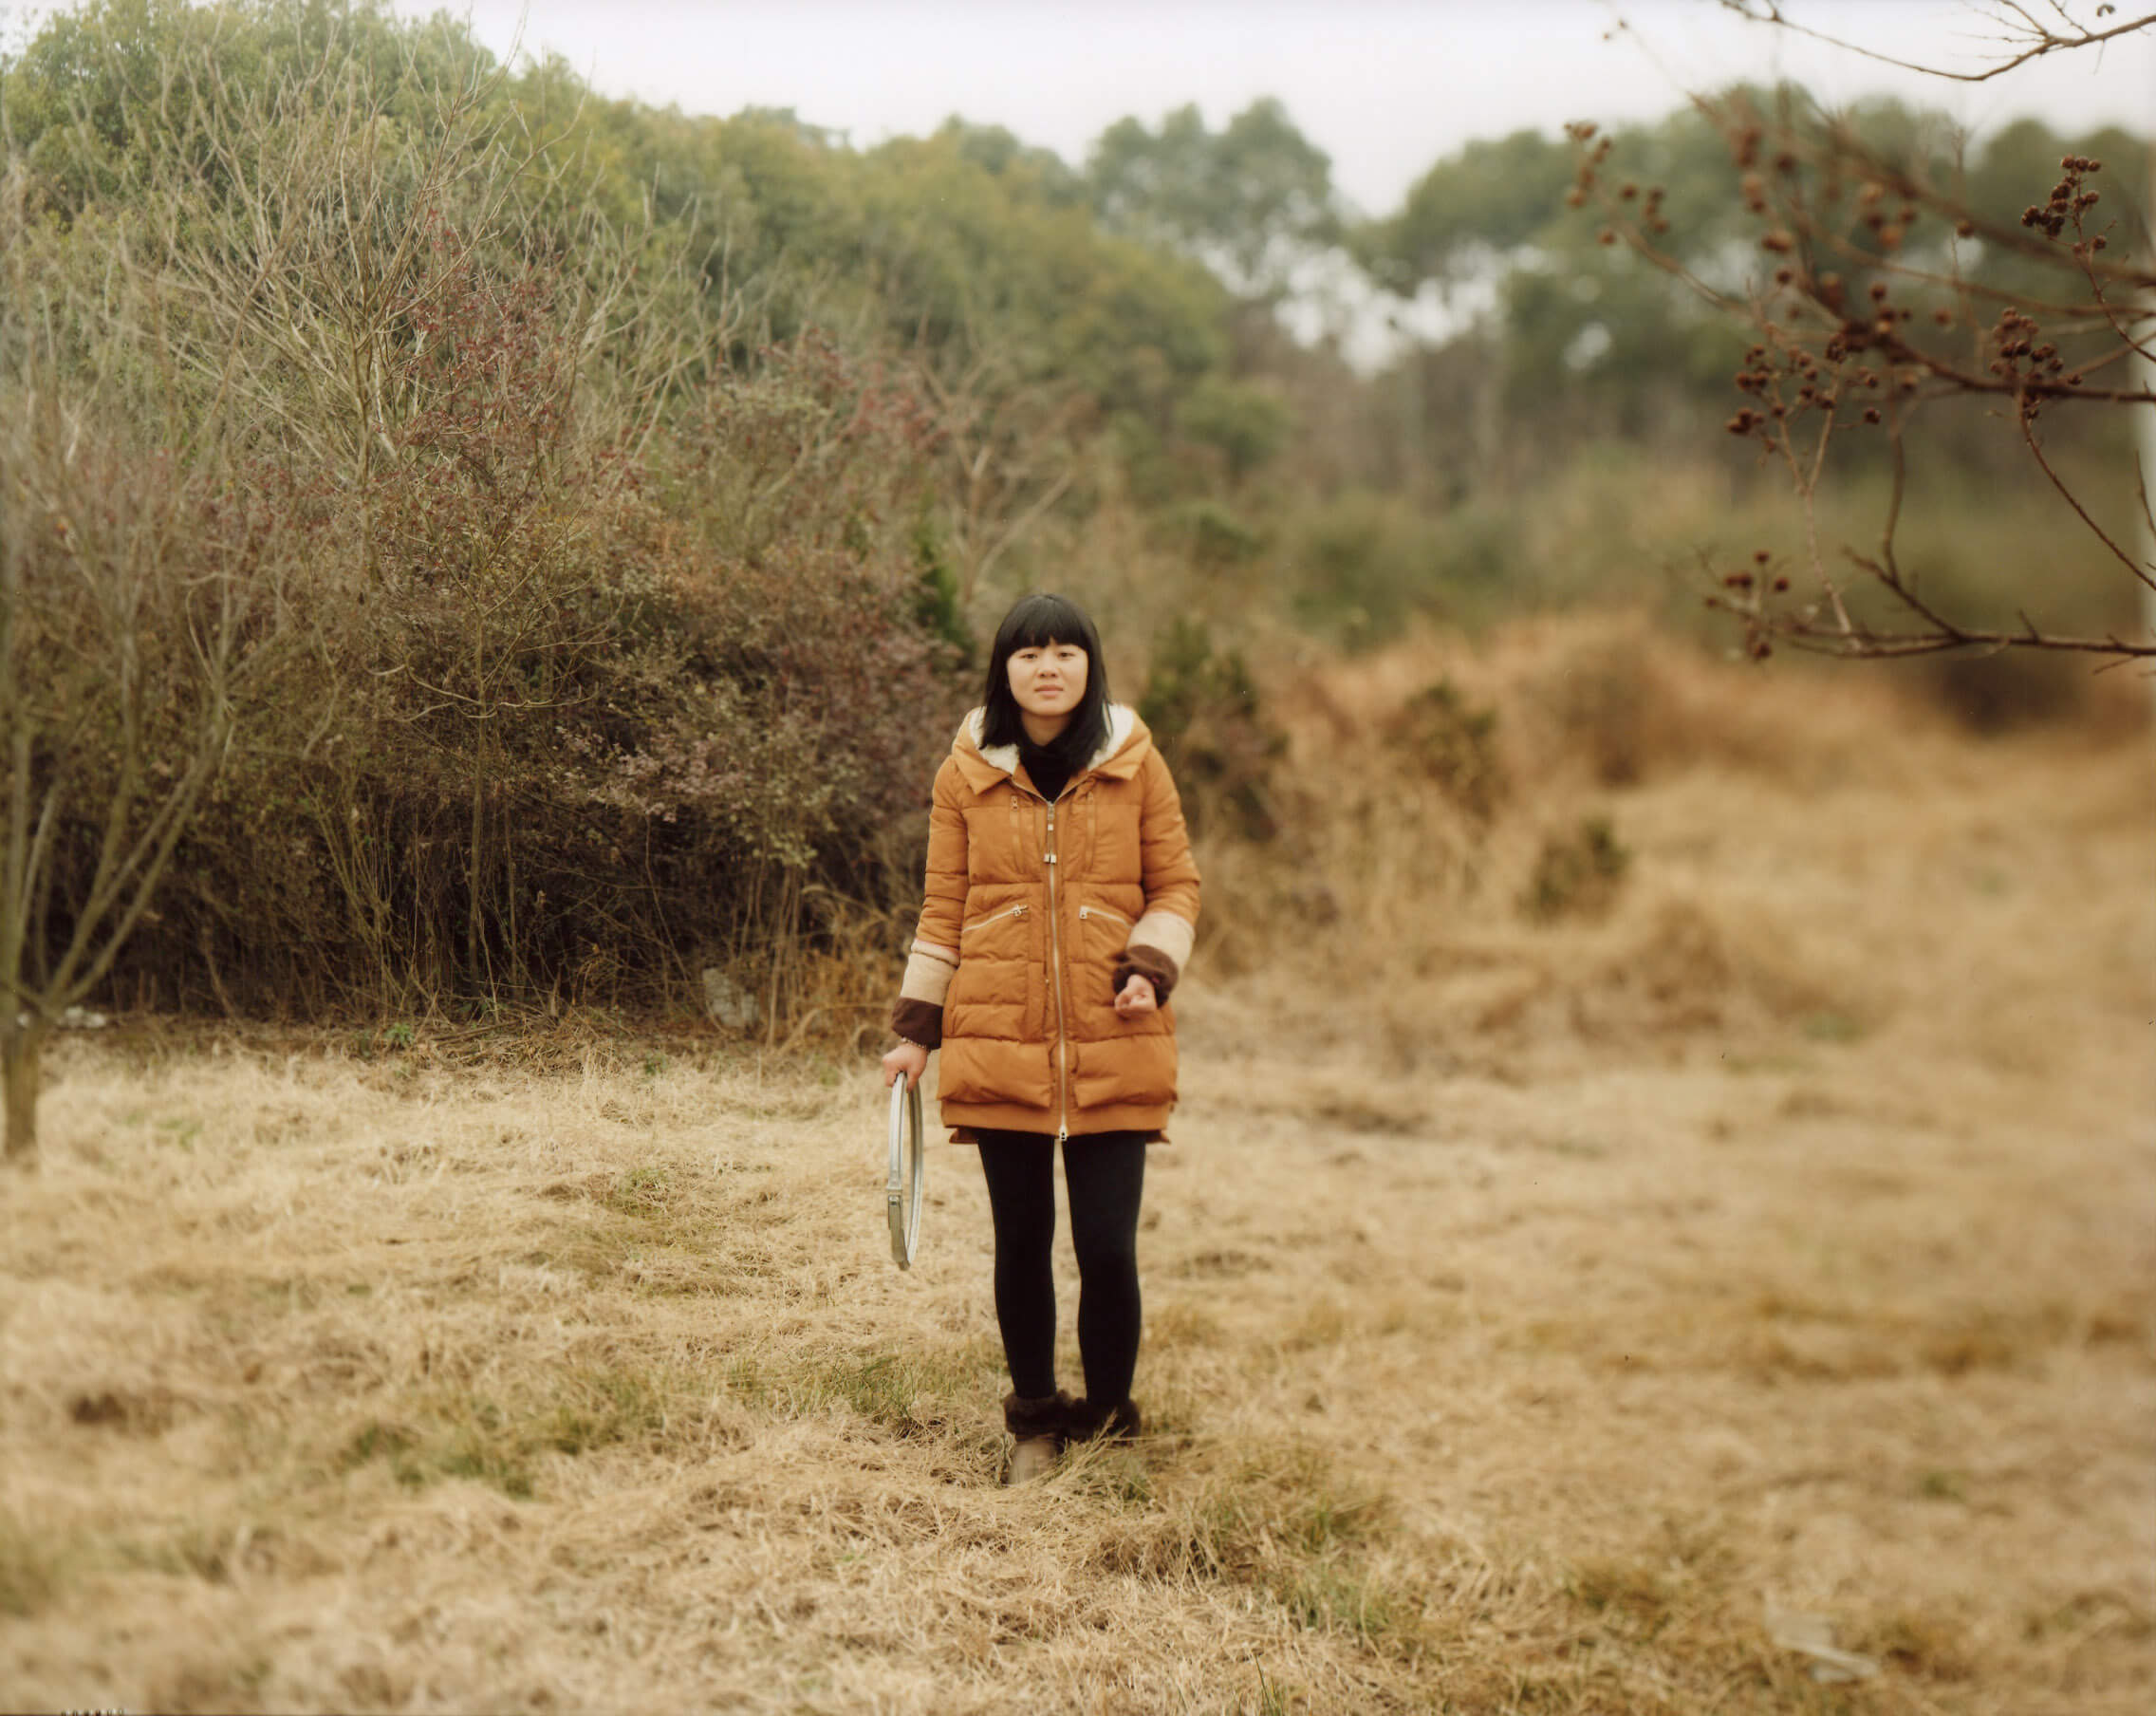 Francesco Neri, Querétaro/Shengzhou, 2014, conceived for Elica